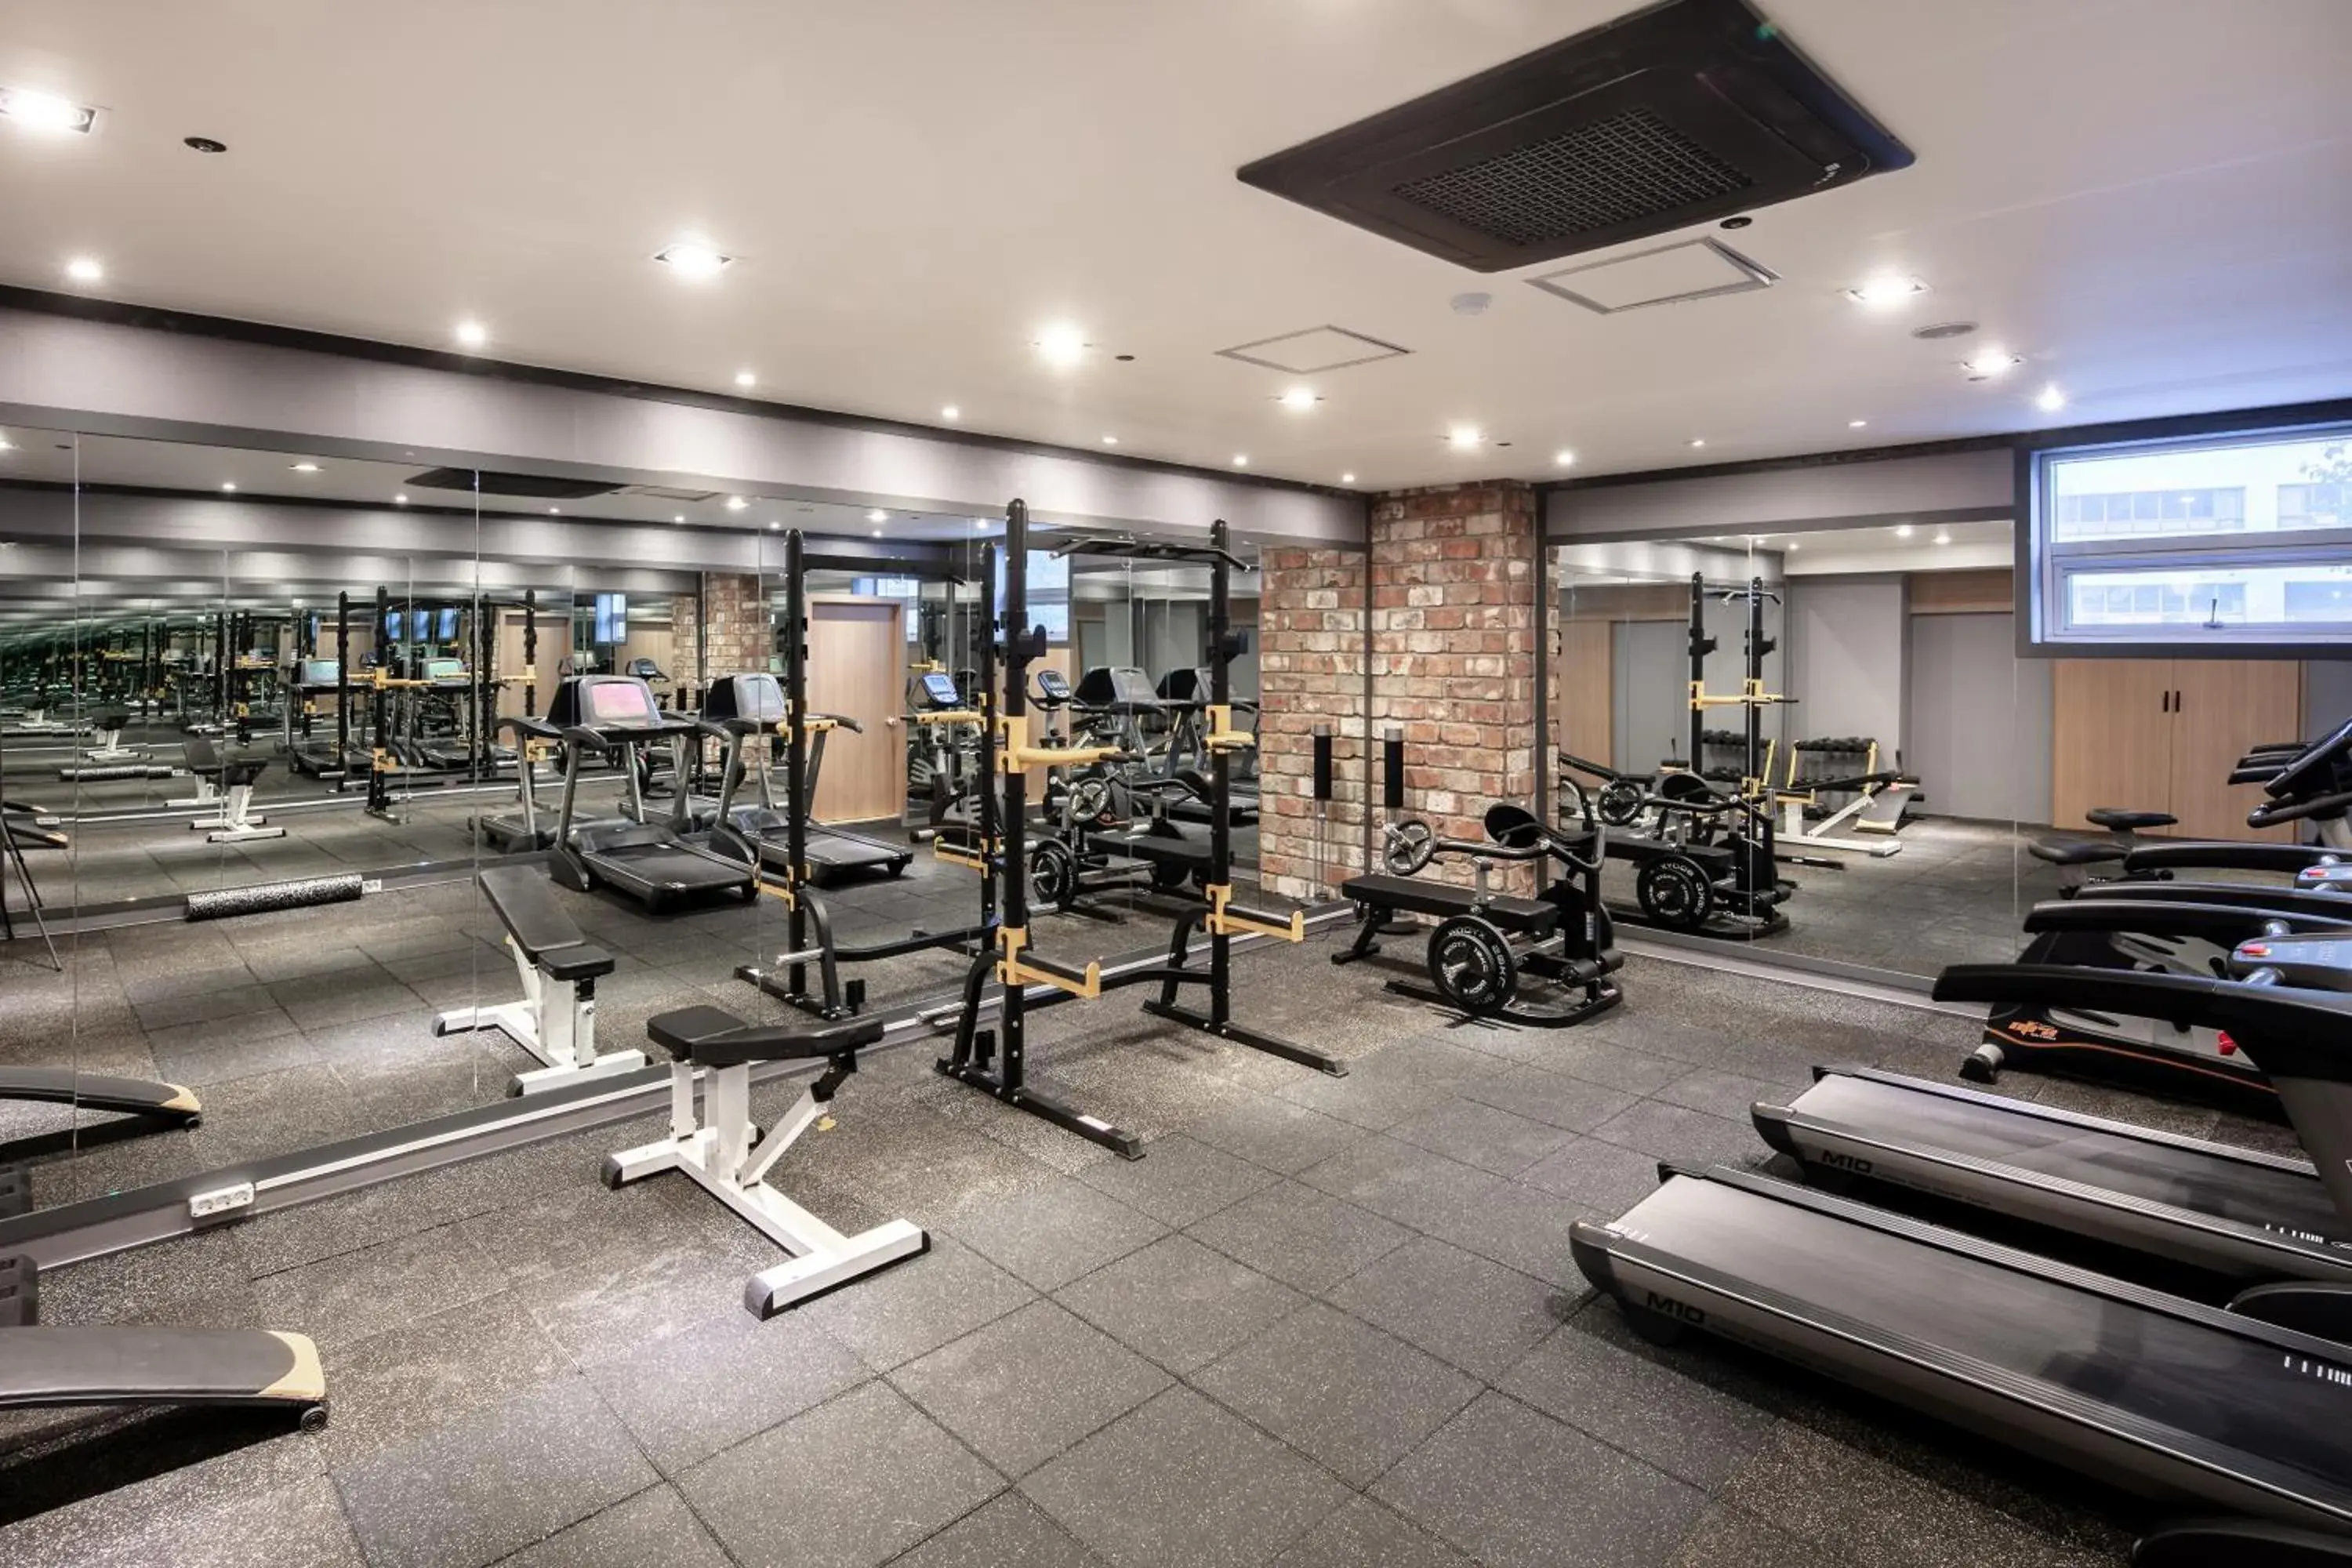 Fitness centre/facilities, Fitness Center/Facilities in Hotel Bernoui Seoul